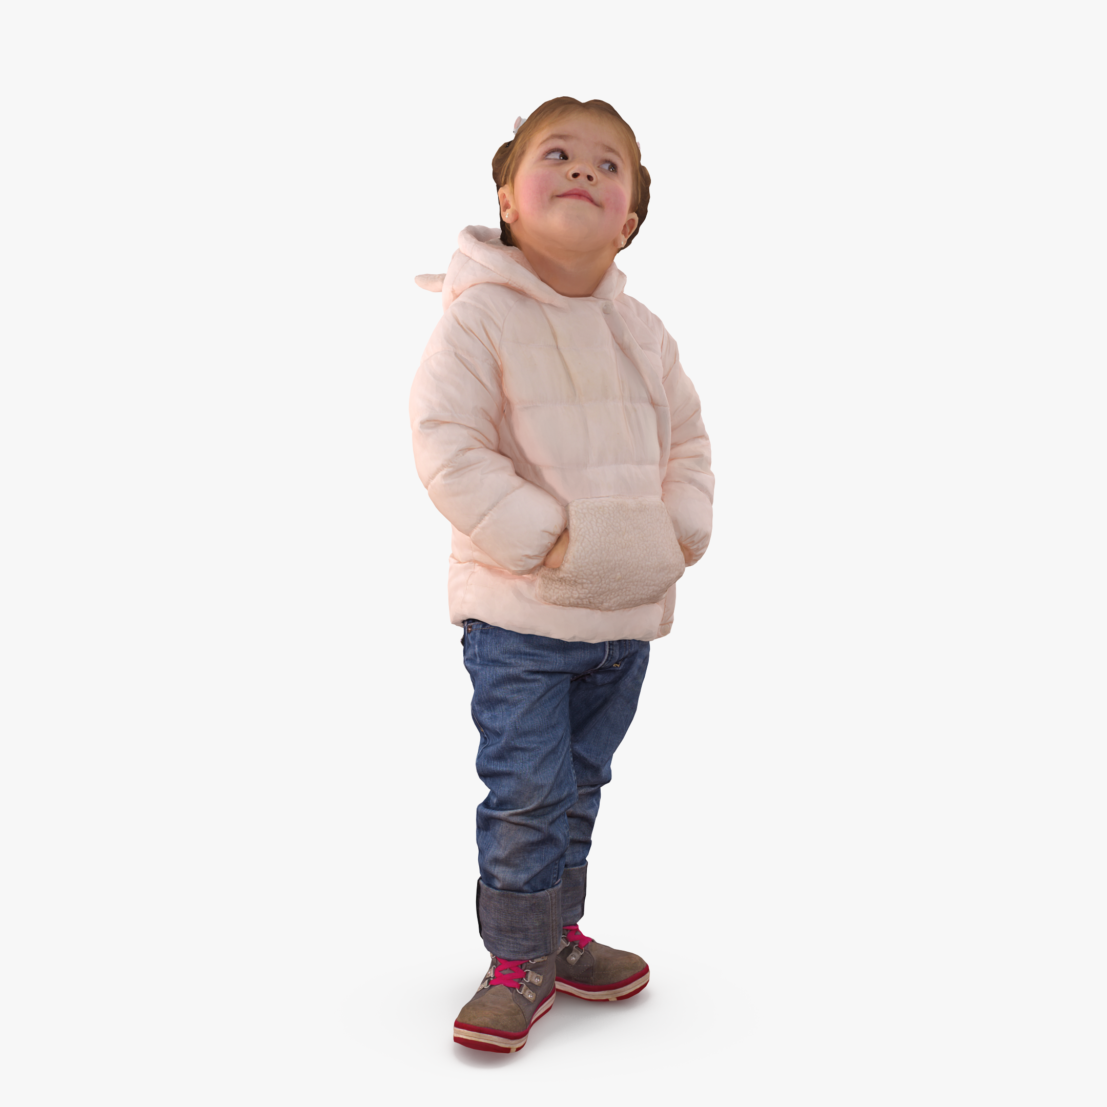 Baby Standing 3D Model | 3DTree Scanning Studio